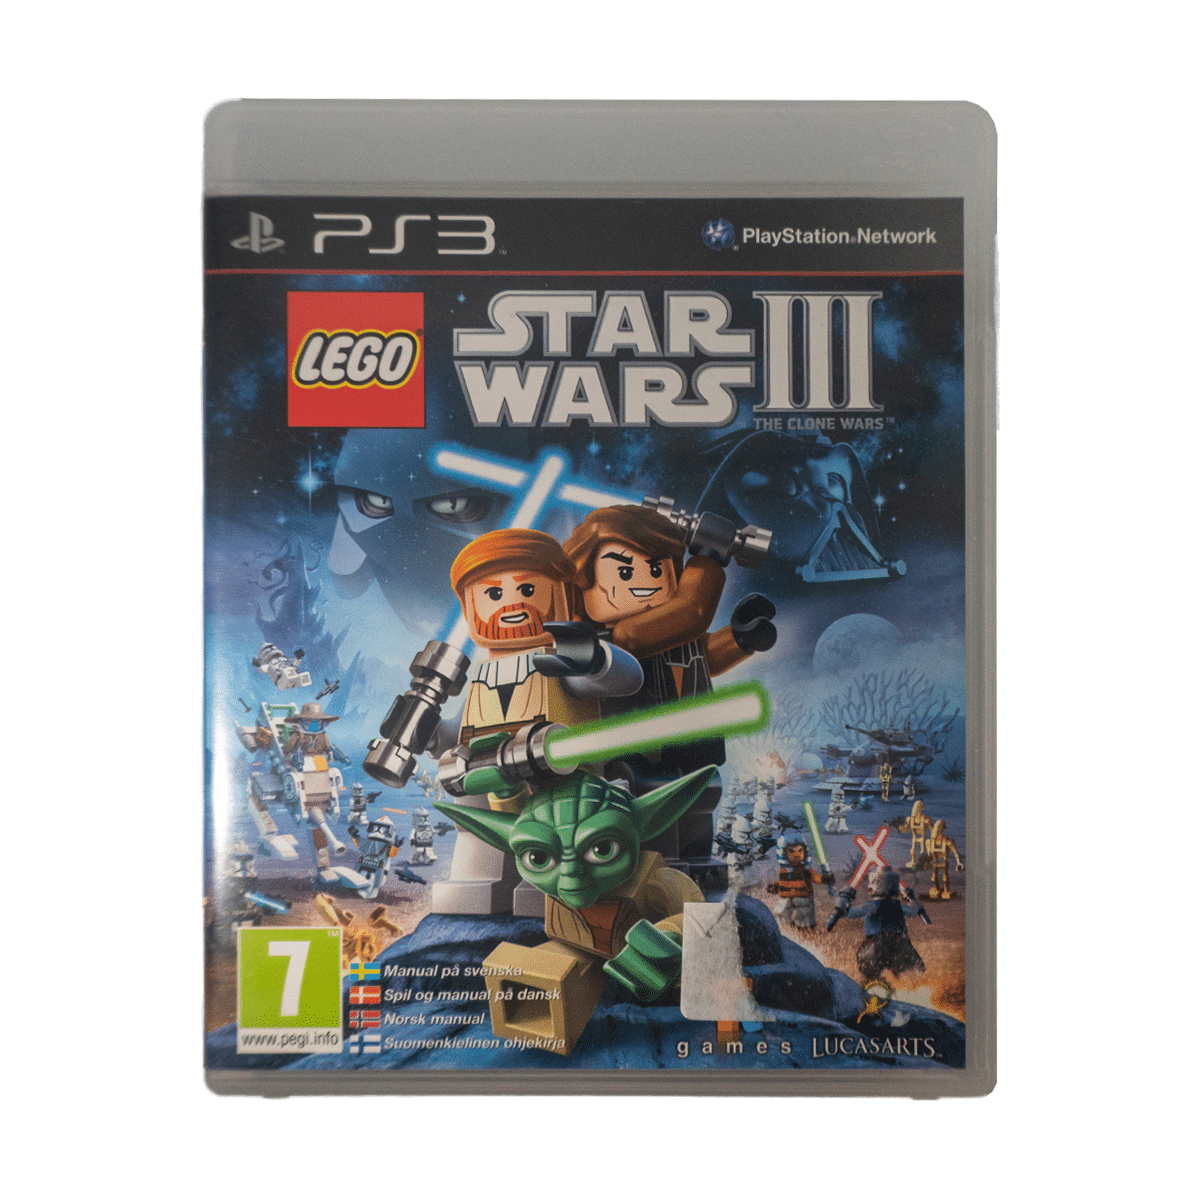 Uartig overraskelse Sammenlignelig LEGO Star Wars III: The Clone Wars - PlayStation 3 Spil - Retro Spilbutik